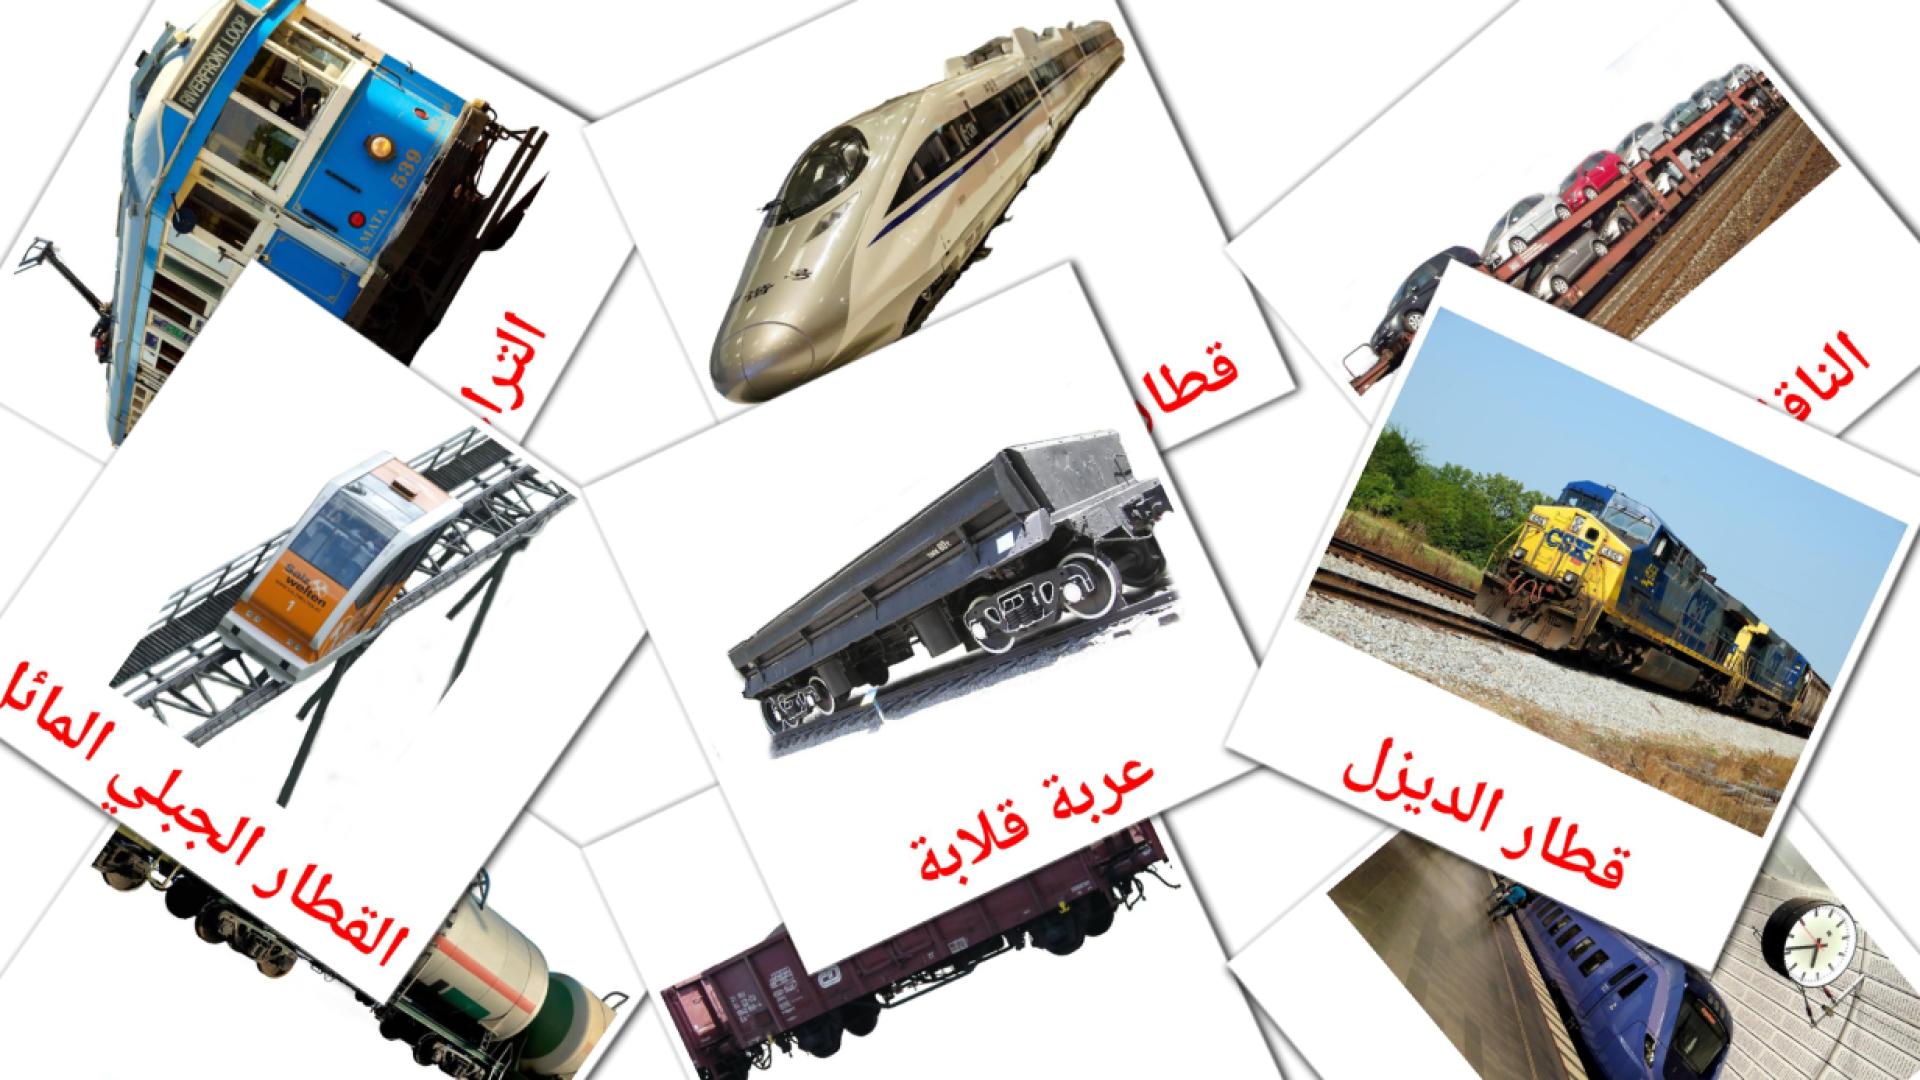 Vervoer per spoor - arabische woordenschatkaarten